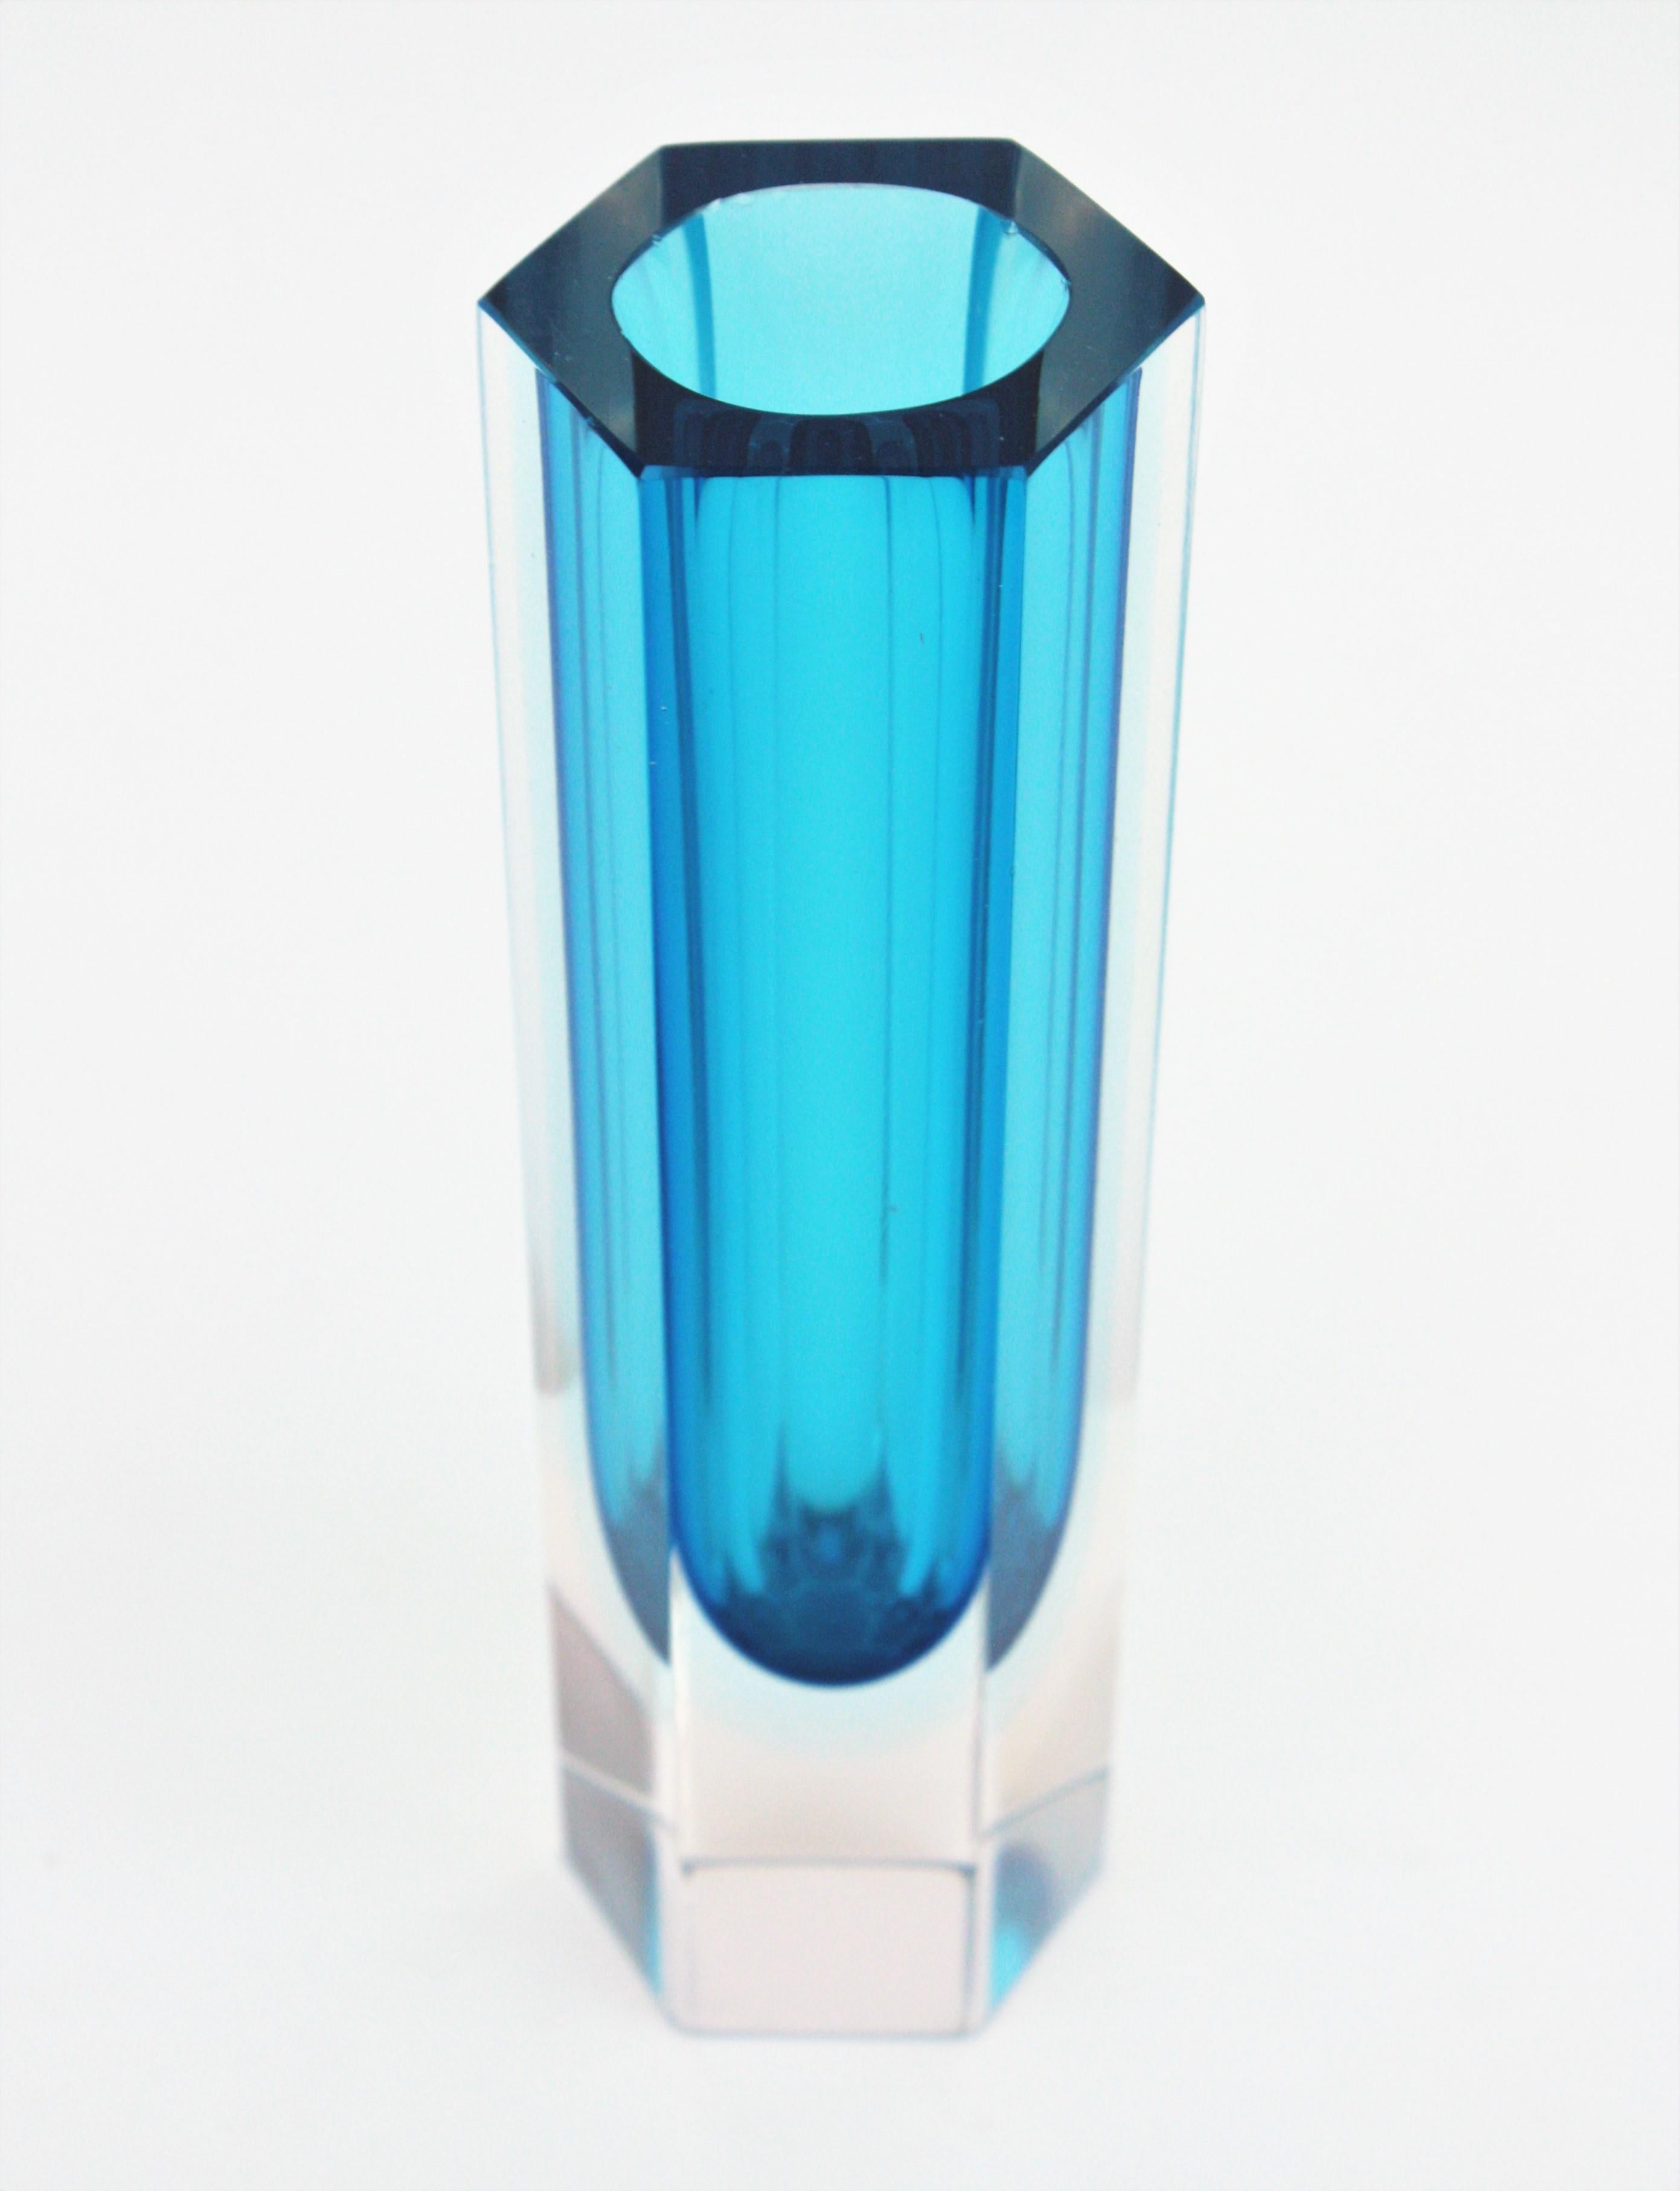 Vase hexagonal à facettes en verre Sommerso bleu et transparent du milieu du siècle dernier. Attribué à Mandruzzato, Italie, années 1960.
Verre bleu avec une couche de verre bleu foncé summergée dans du verre clair.
Ce vase accrocheur sera assez